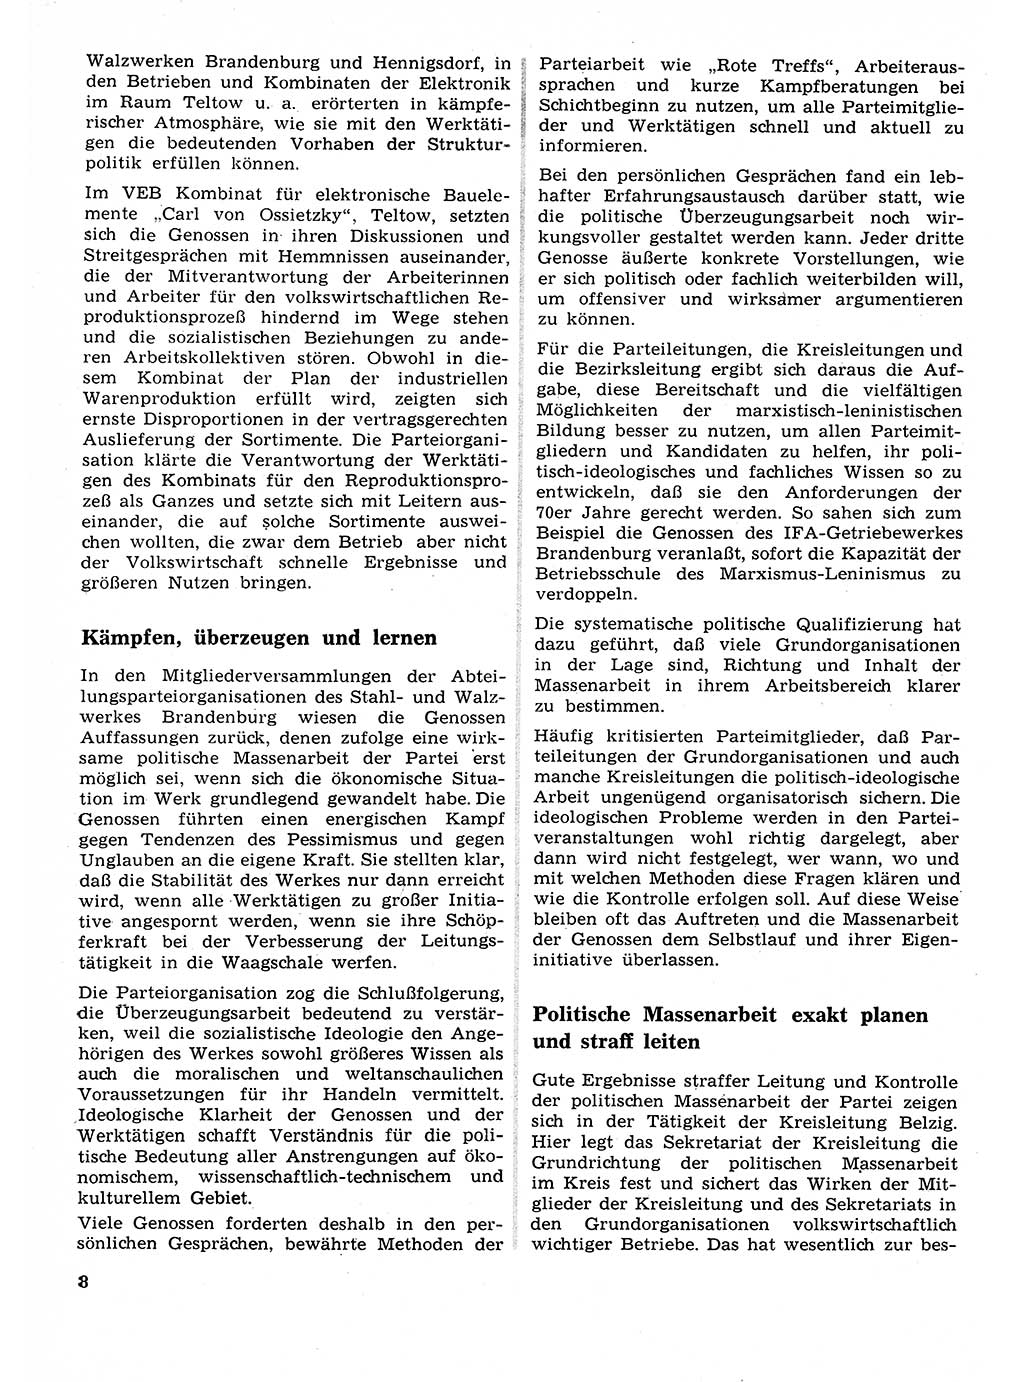 Neuer Weg (NW), Organ des Zentralkomitees (ZK) der SED (Sozialistische Einheitspartei Deutschlands) für Fragen des Parteilebens, 26. Jahrgang [Deutsche Demokratische Republik (DDR)] 1971, Seite 8 (NW ZK SED DDR 1971, S. 8)